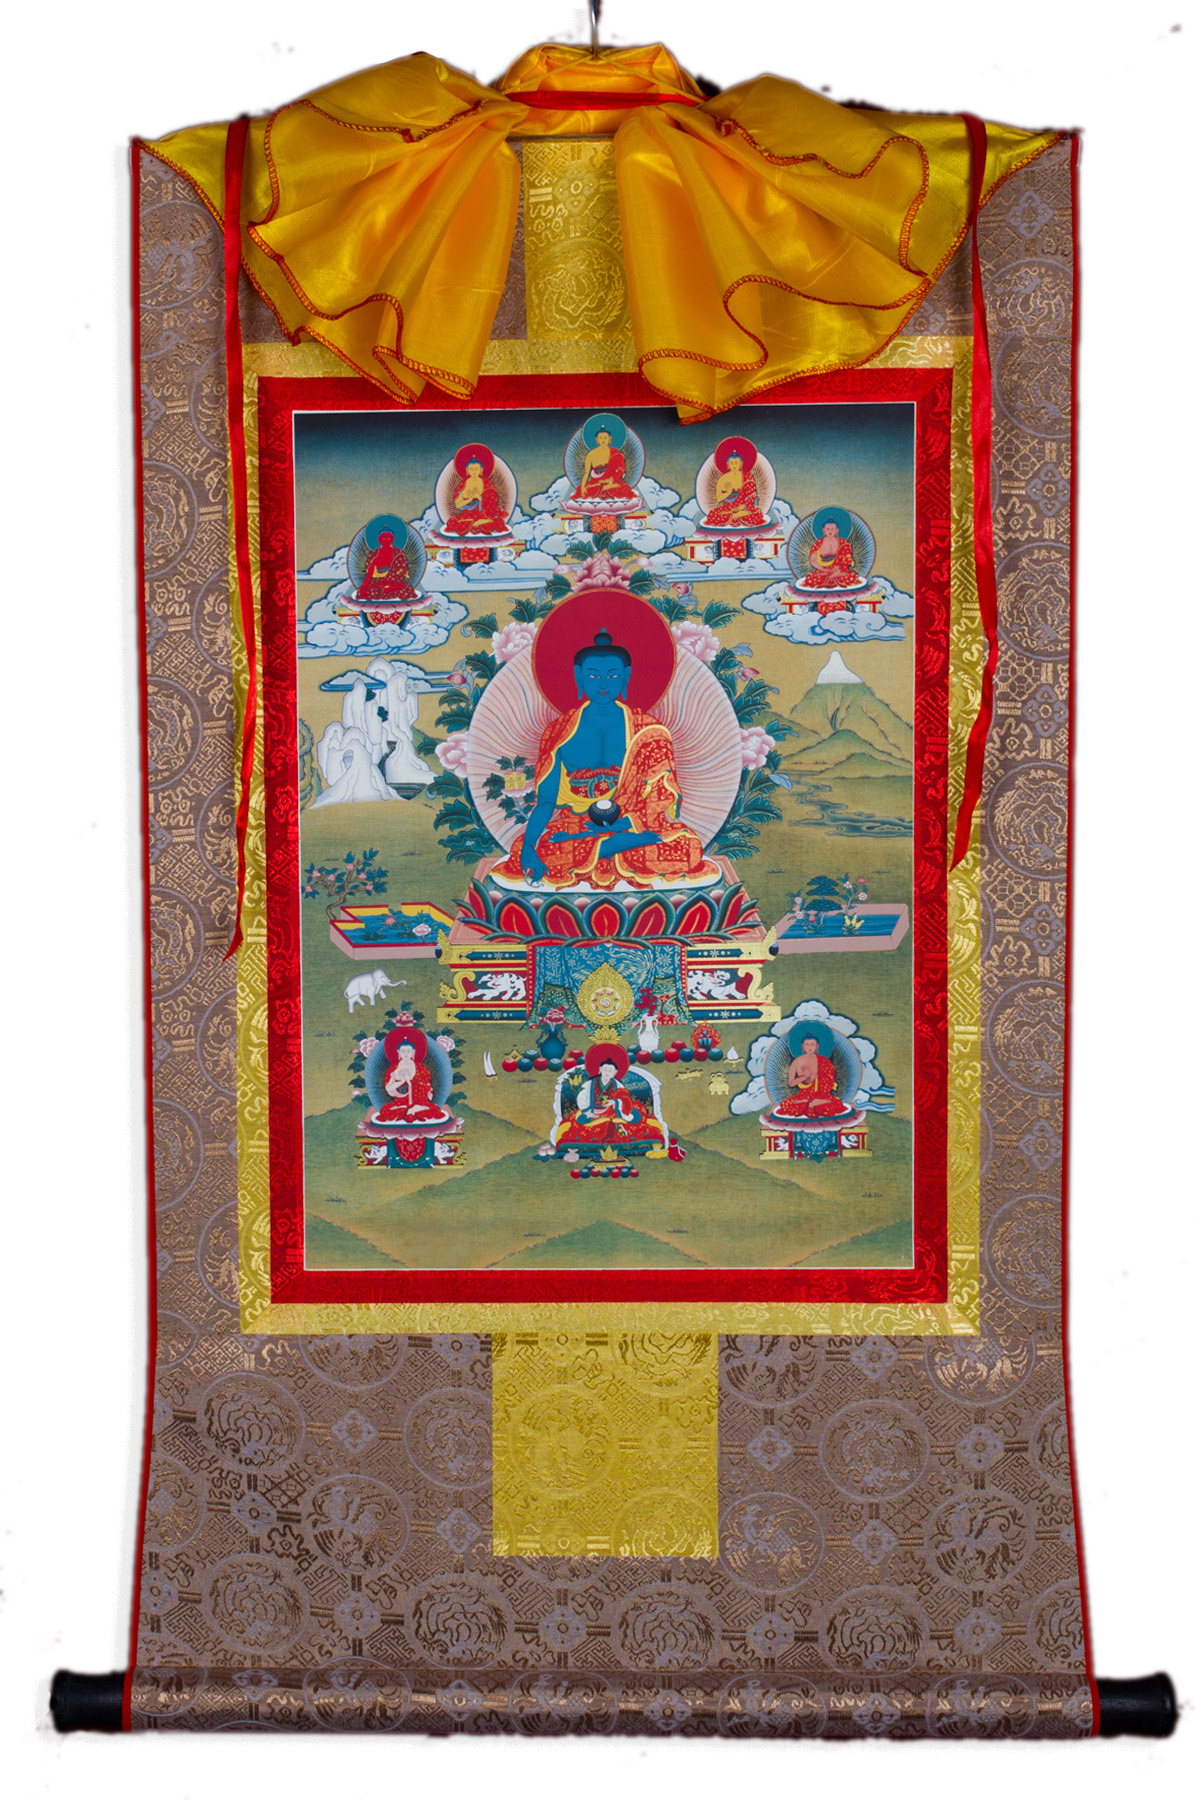 Тханка Будда Медицины (печатная, 51 х 83 см), ~ 51 х 83 см, изображение: ~ 32 х 44,5 см